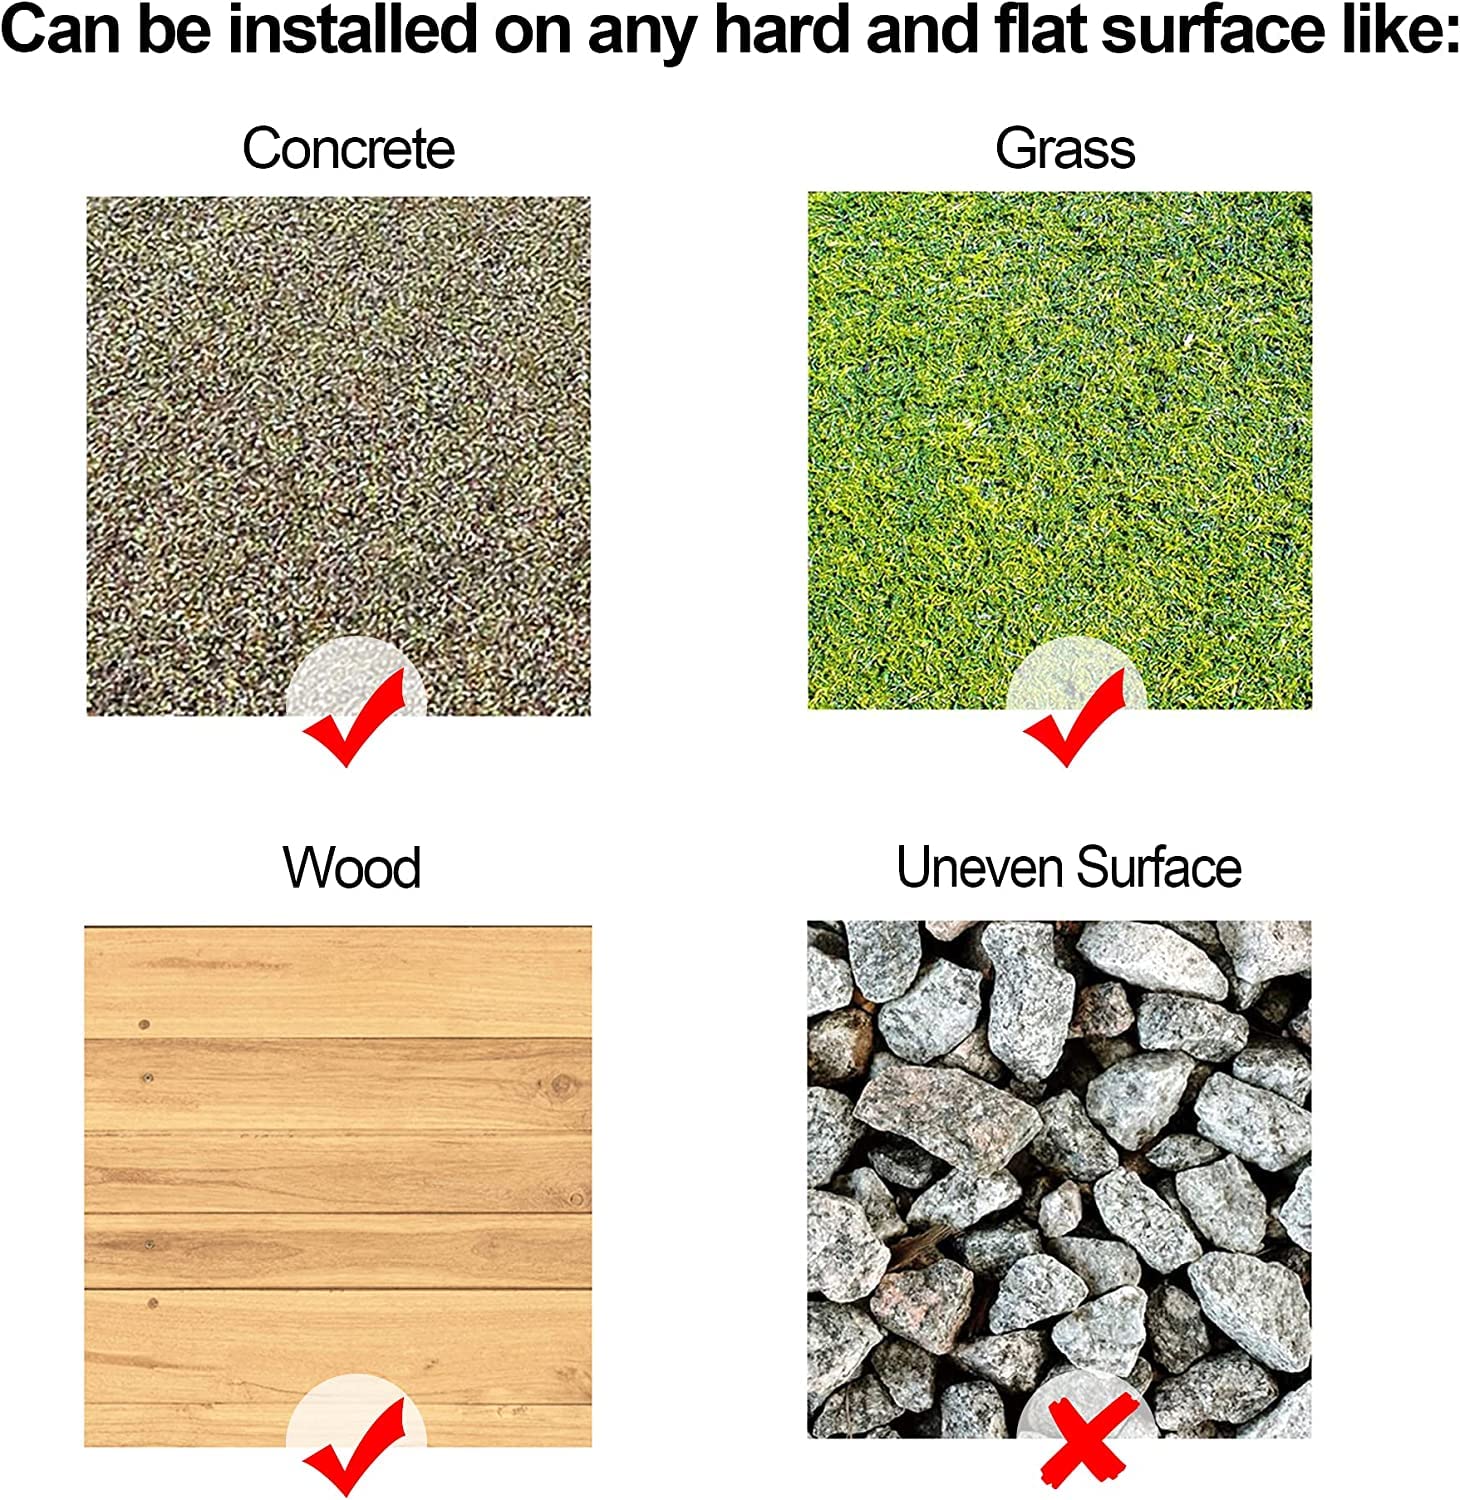 Plantex Tiles for Floor-Interlocking Stone Tiles/Garden Tile/Quick Flooring Solution for Indoor/Outdoor Deck Tile-Pack of 1 (Ivory Stones,APS-1220)